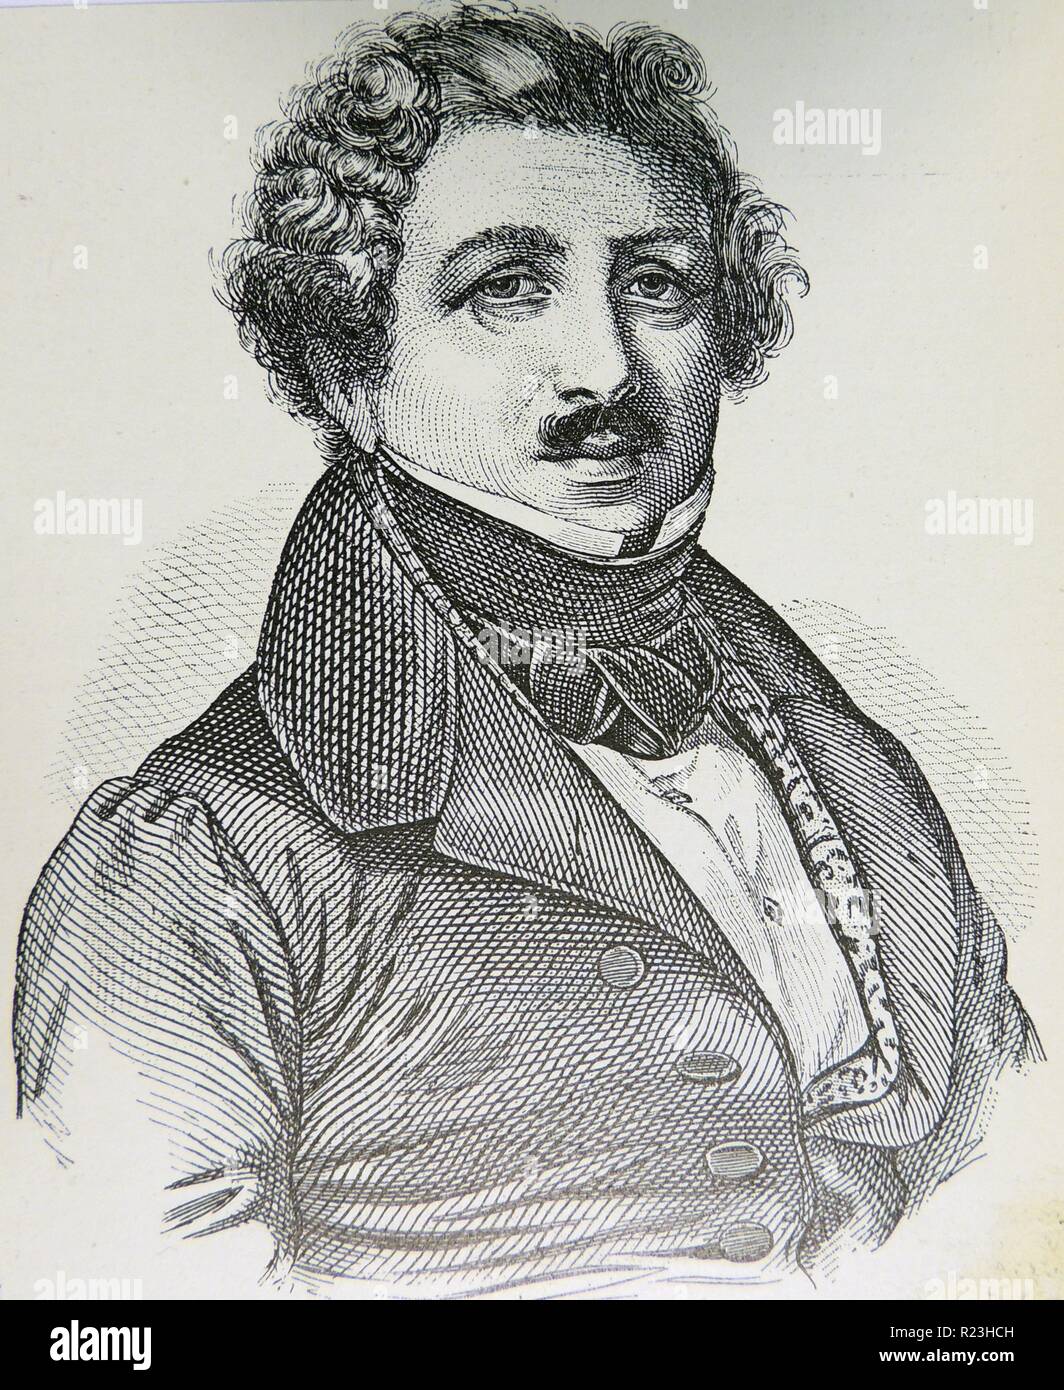 Louis Jacques Daguerre (1789-1851) francés pionero de la fotografía. Inventor de la Daguerrotype. Grabado, Leipzig, c1895. Foto de stock